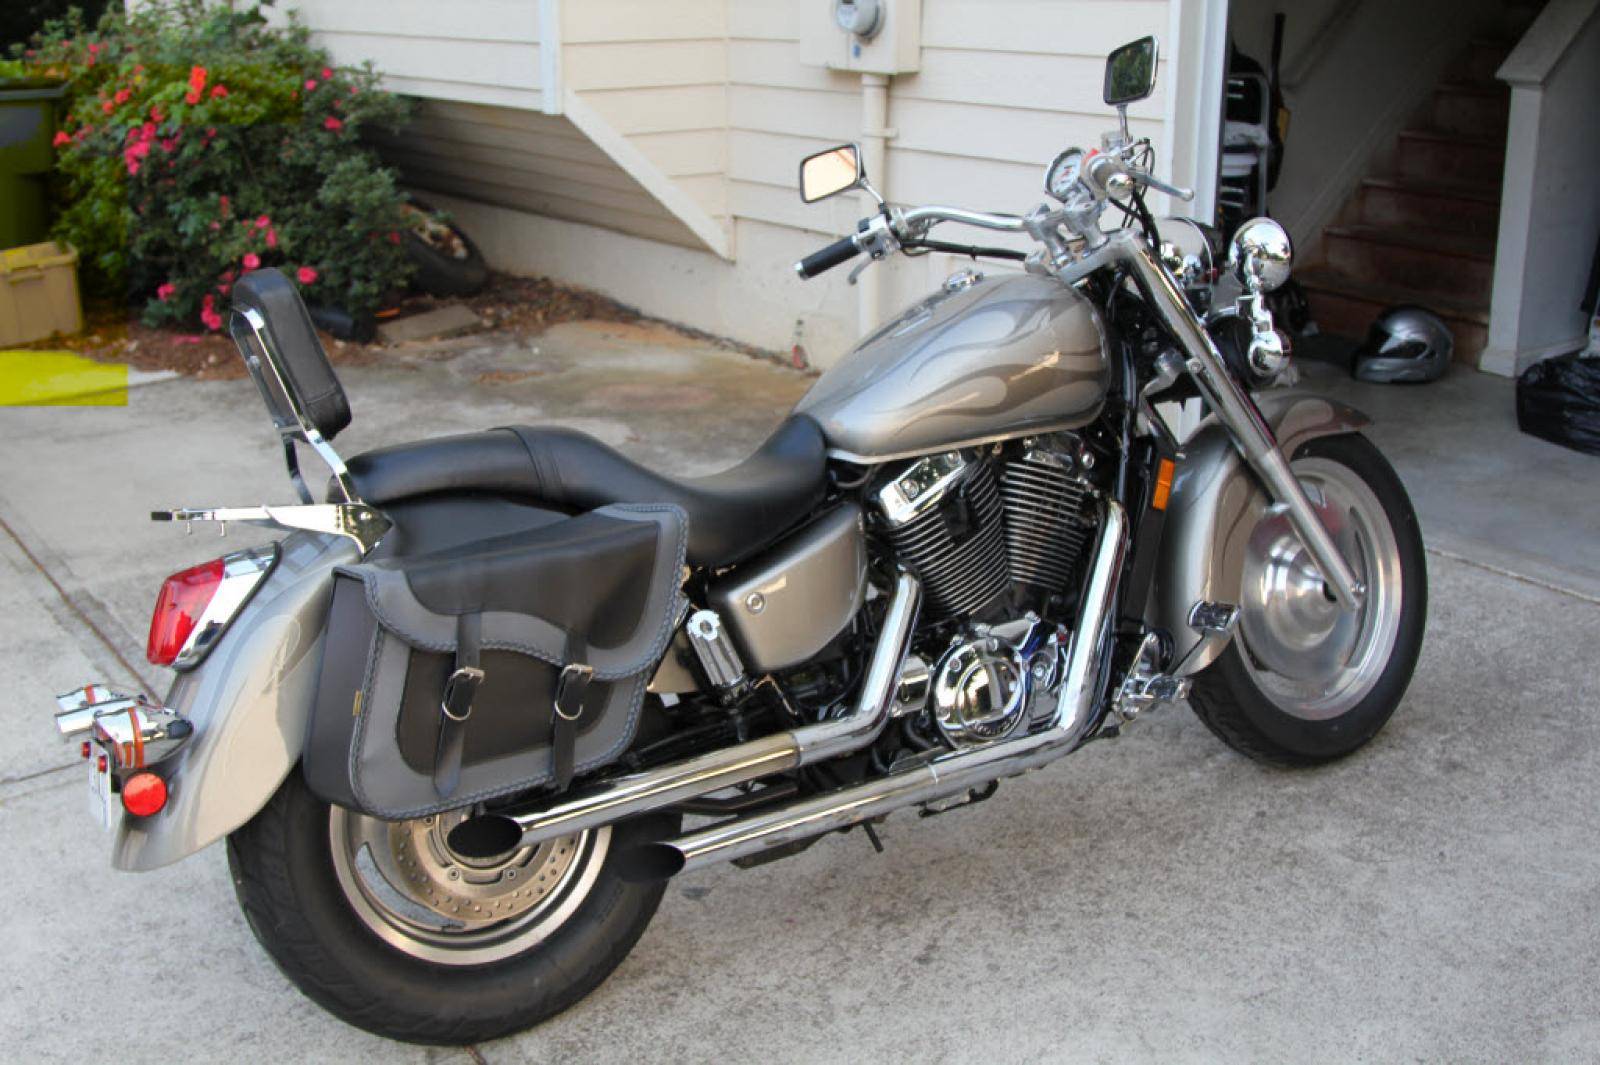 Мотоцикл honda vt 1100 c2 1995 цена, фото, характеристики, обзор, сравнение на базамото